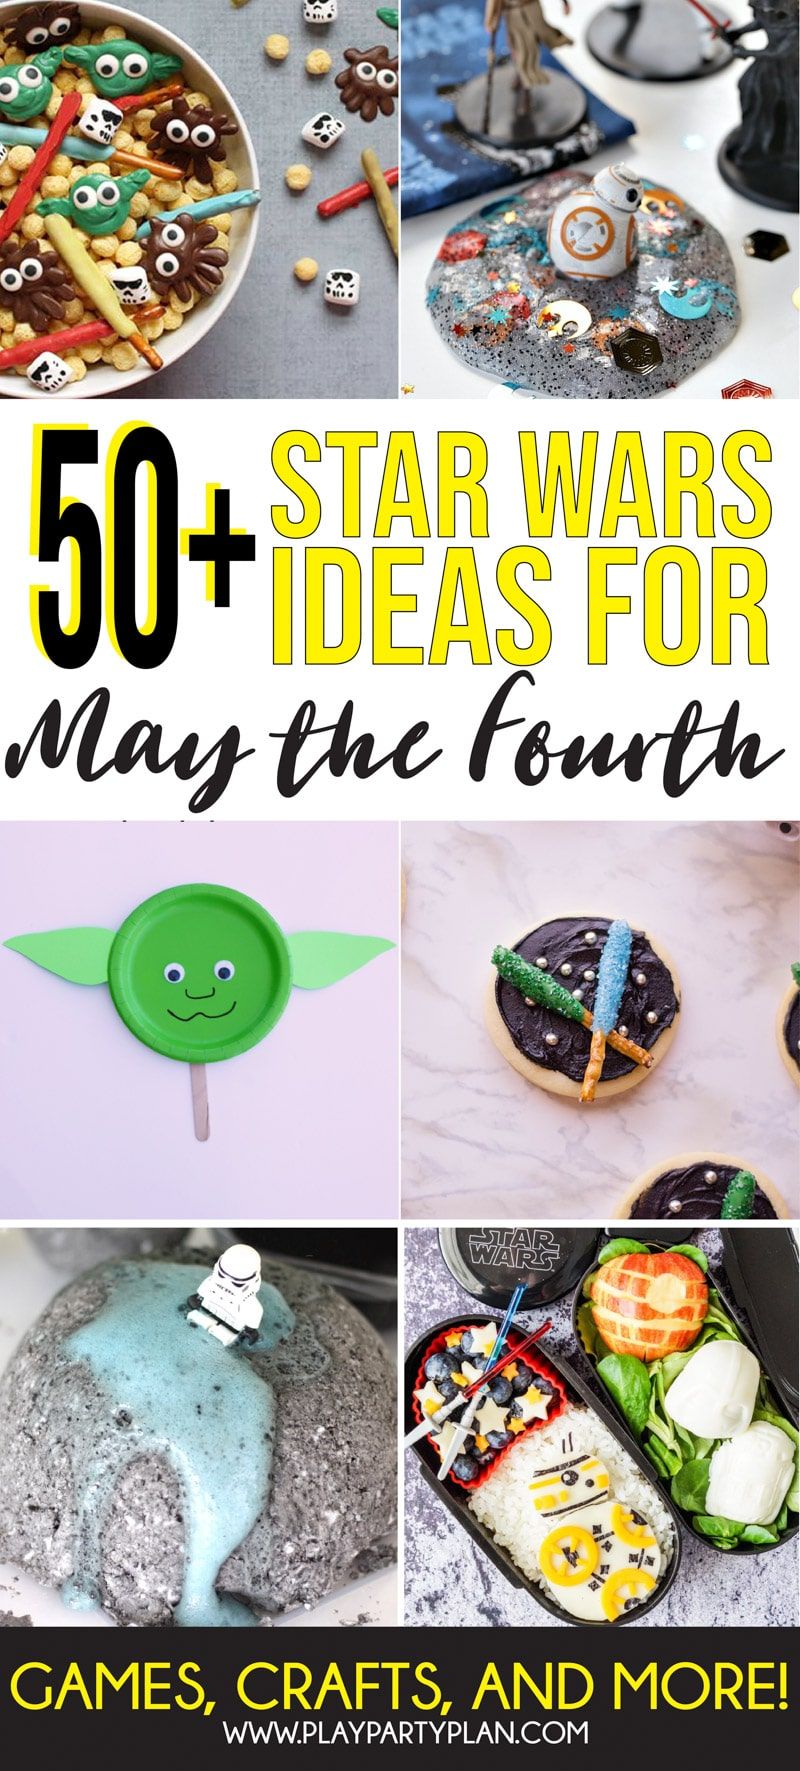 Οι καλύτερες ιδέες για την Ημέρα του Star Wars με τα πάντα, από ιδέες για πάρτι έως χειροτεχνίες και άλλα! Τόνοι εξαιρετικών τρόπων για να γιορτάσουμε το τέταρτο του Μαΐου!